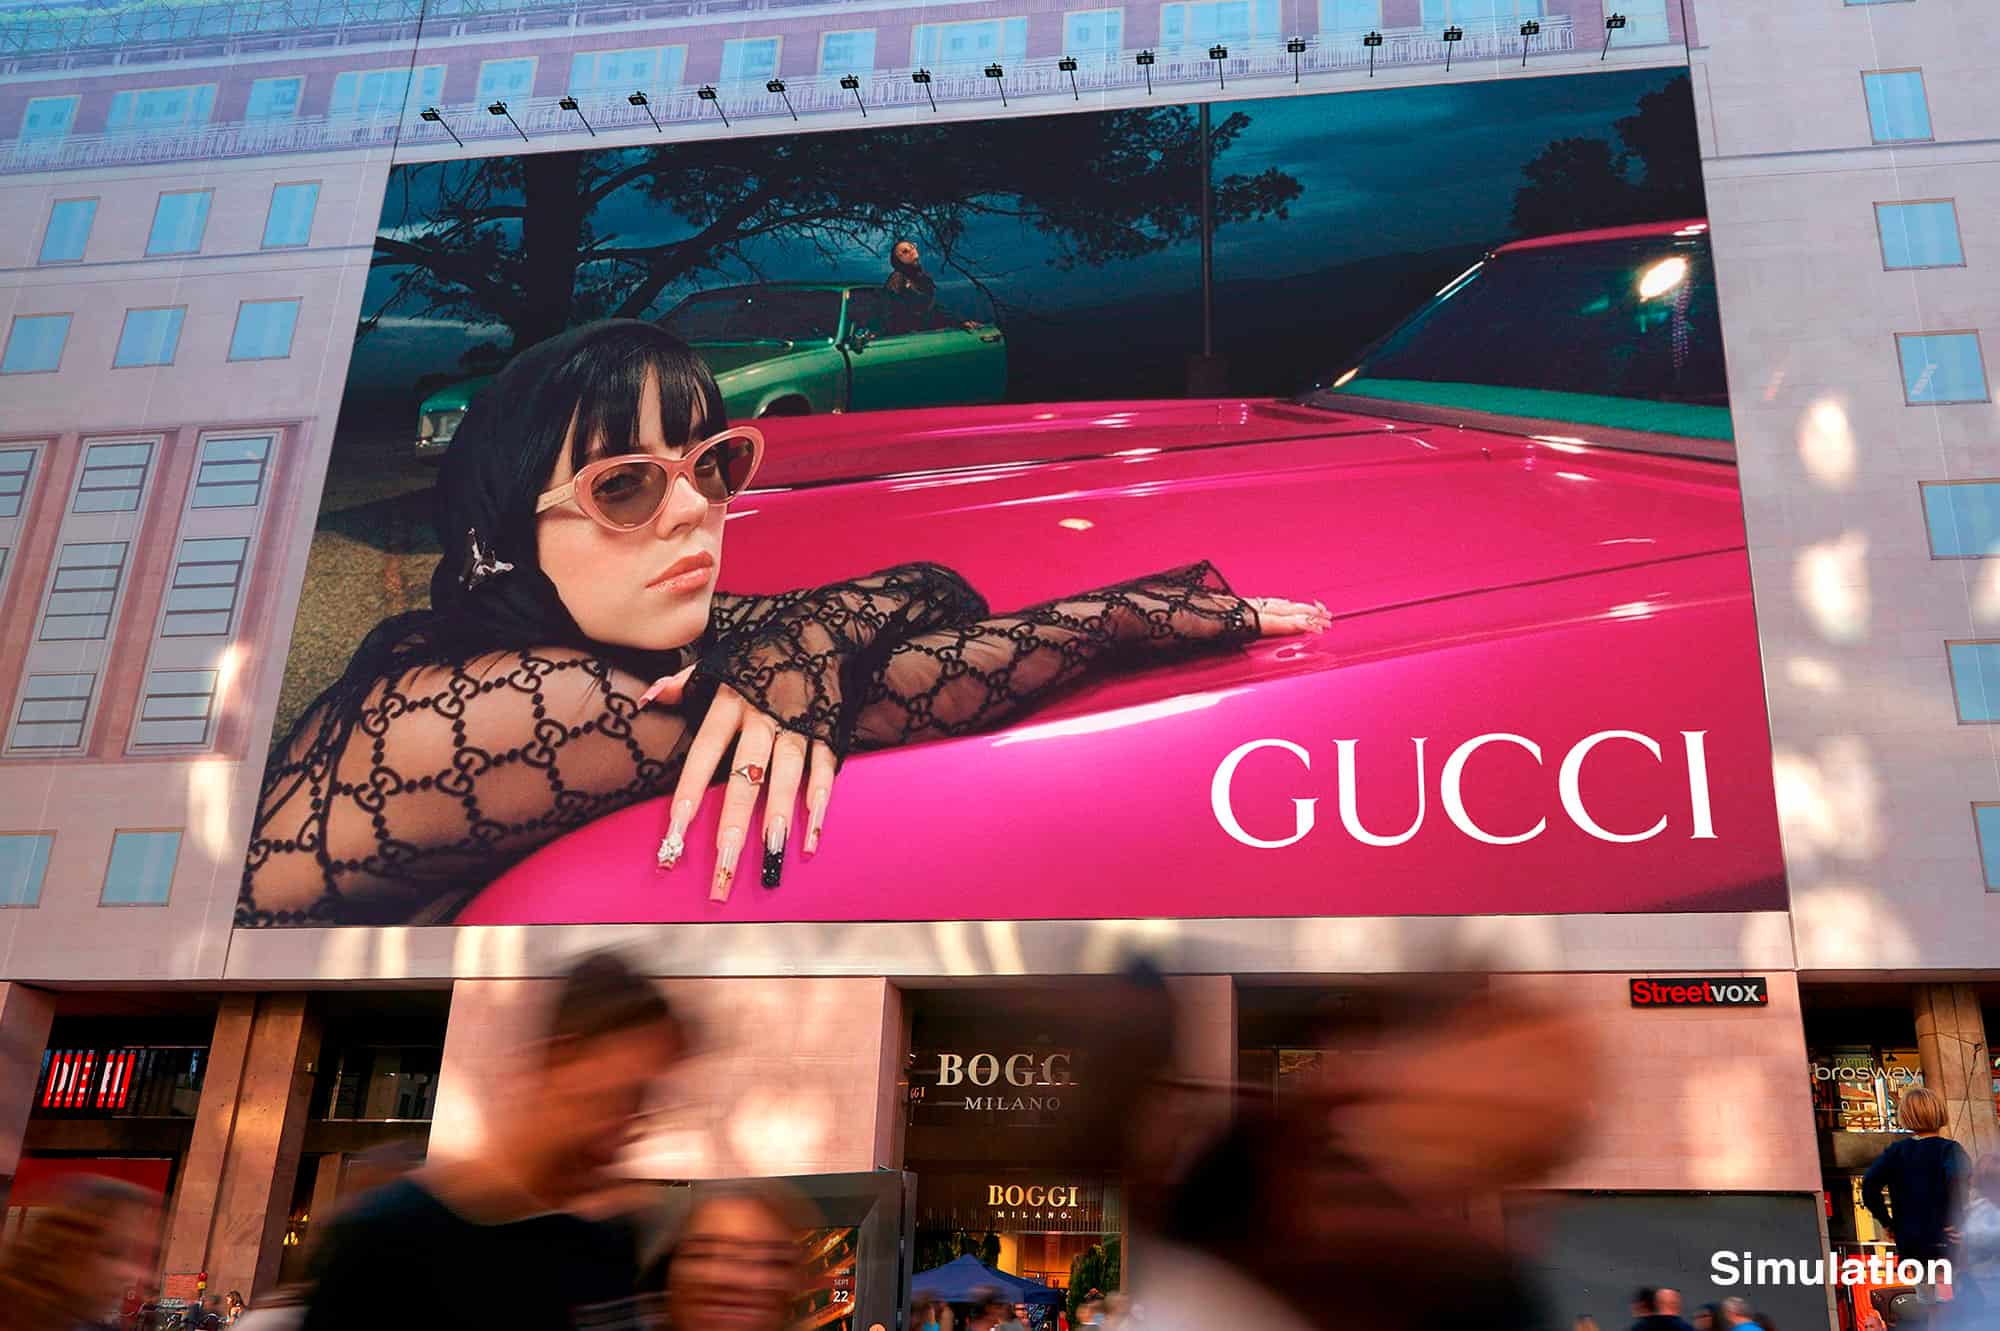 Maxi Affissione a Milano in Piazza San Babila 3 con Gucci (Luxury)